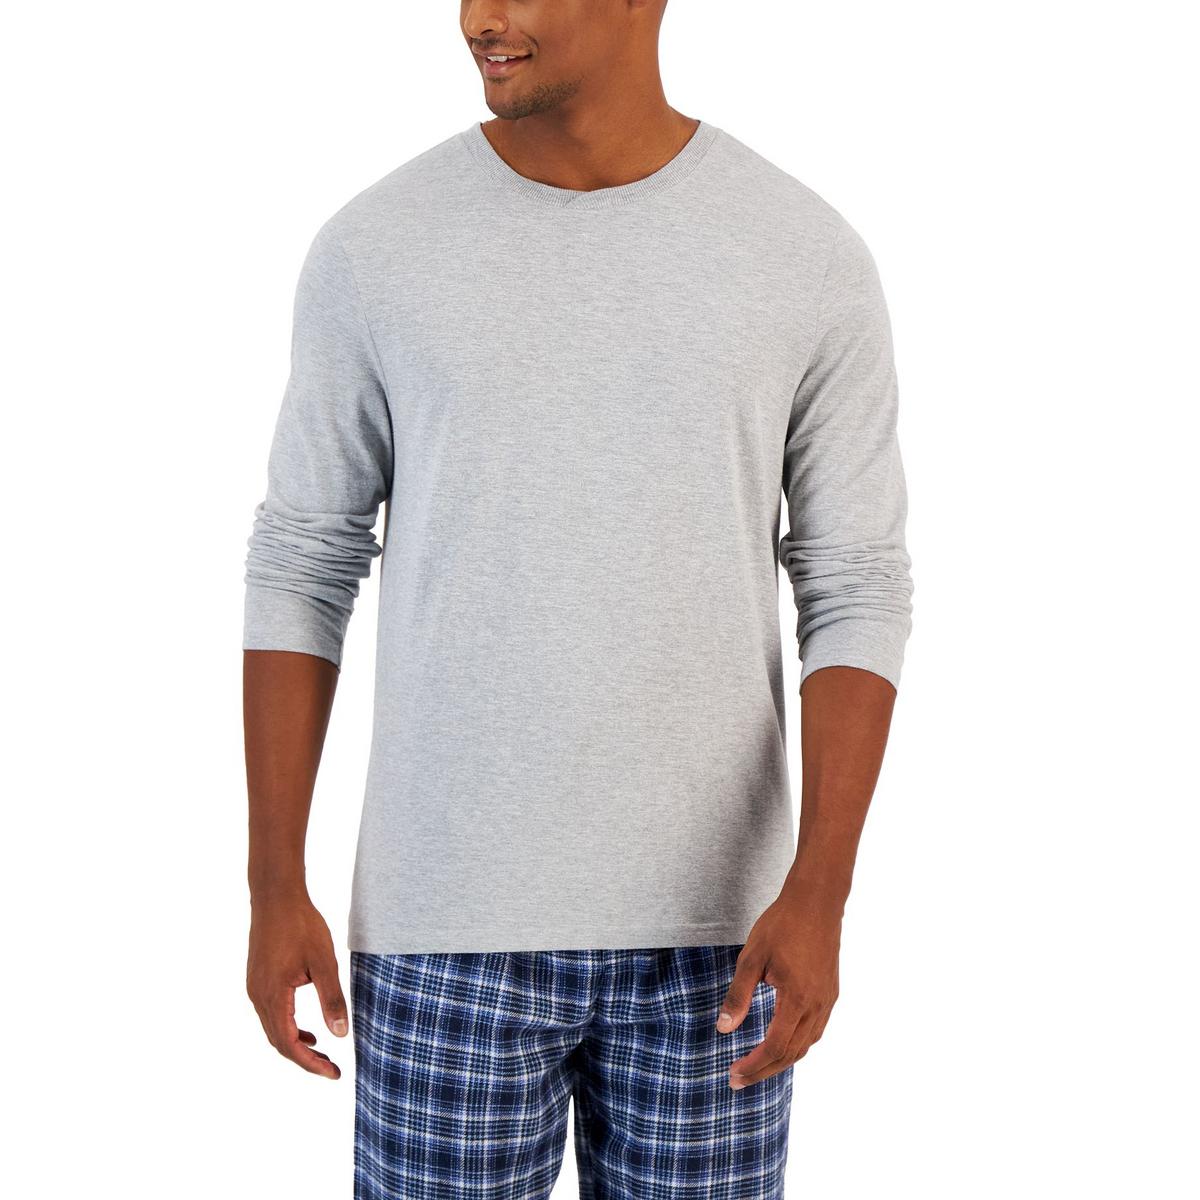 CLUB ROOM Mens Nightwear Sleepwear Sleep Shirt